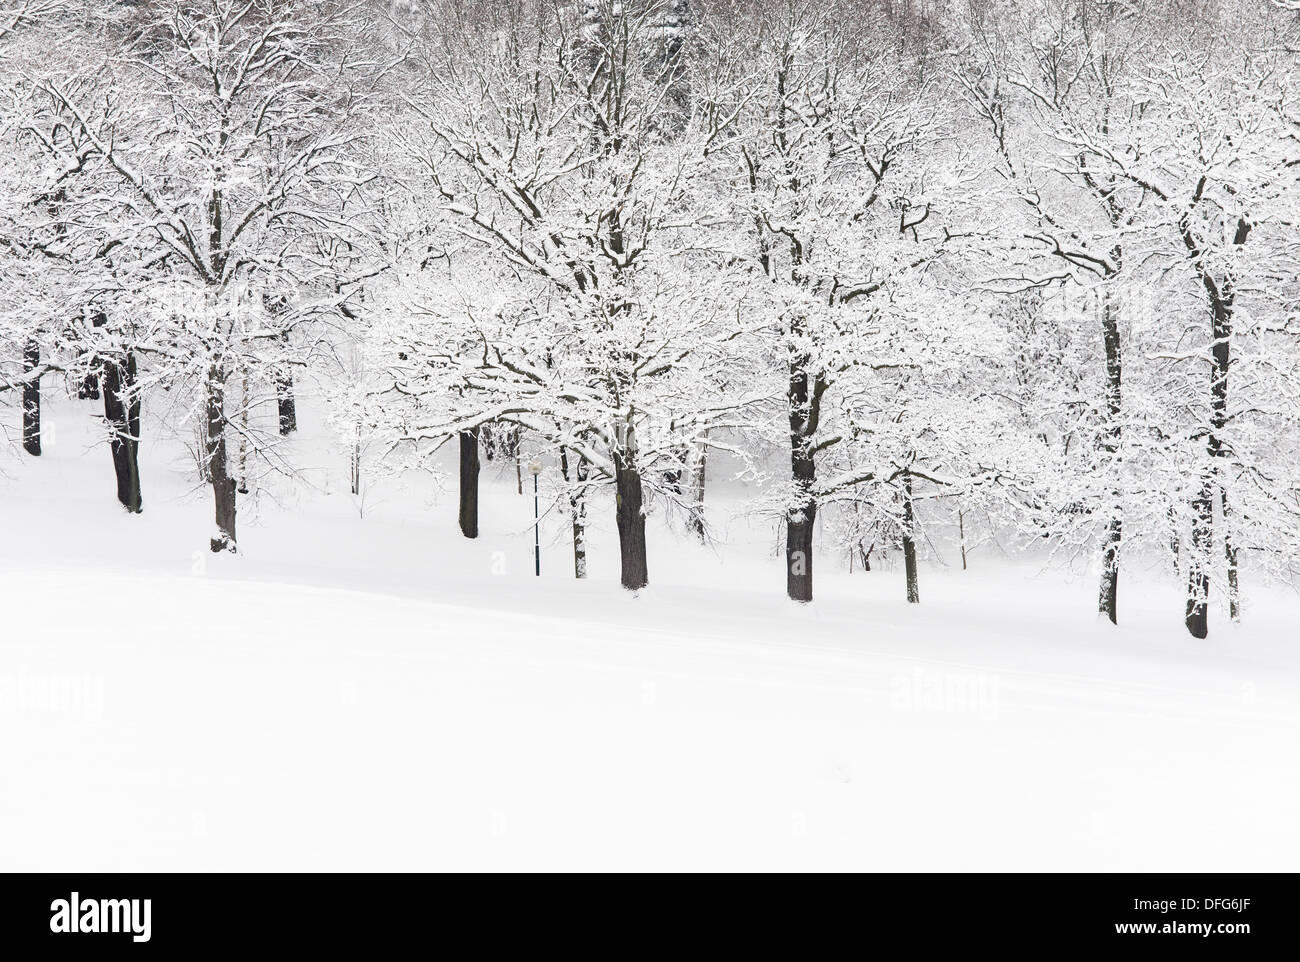 Paysage d'hiver avec des arbres couverts de neige dans le parc vide Banque D'Images